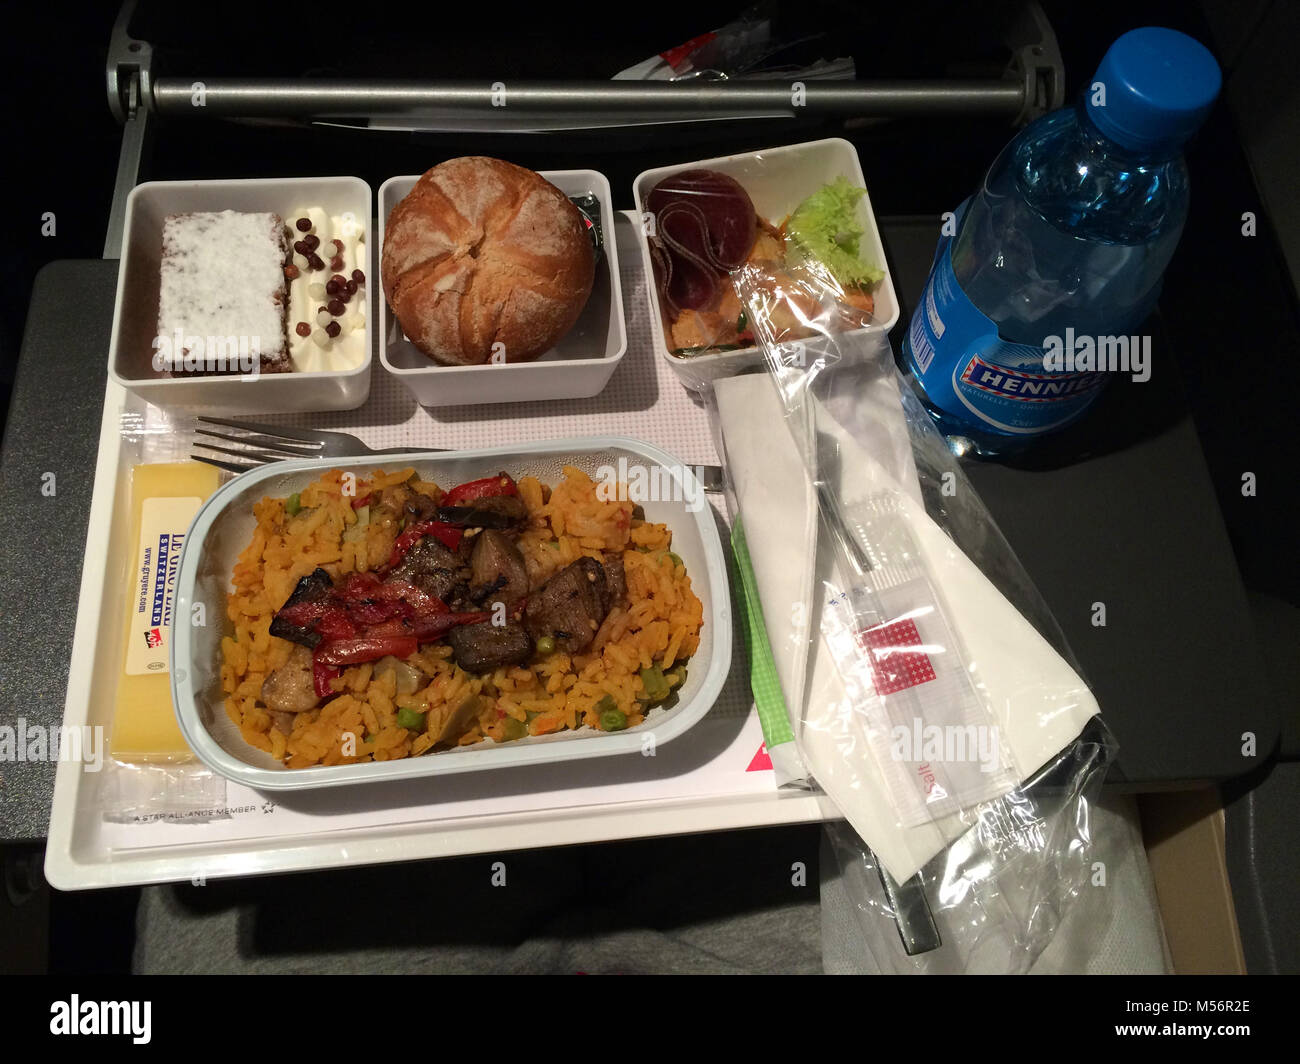 Zürich, Schweiz - Mar 31, 2015: Auf der Flucht warme Mahlzeit der Swiss International Airline in der Economy Class, Abendessen Stockfoto